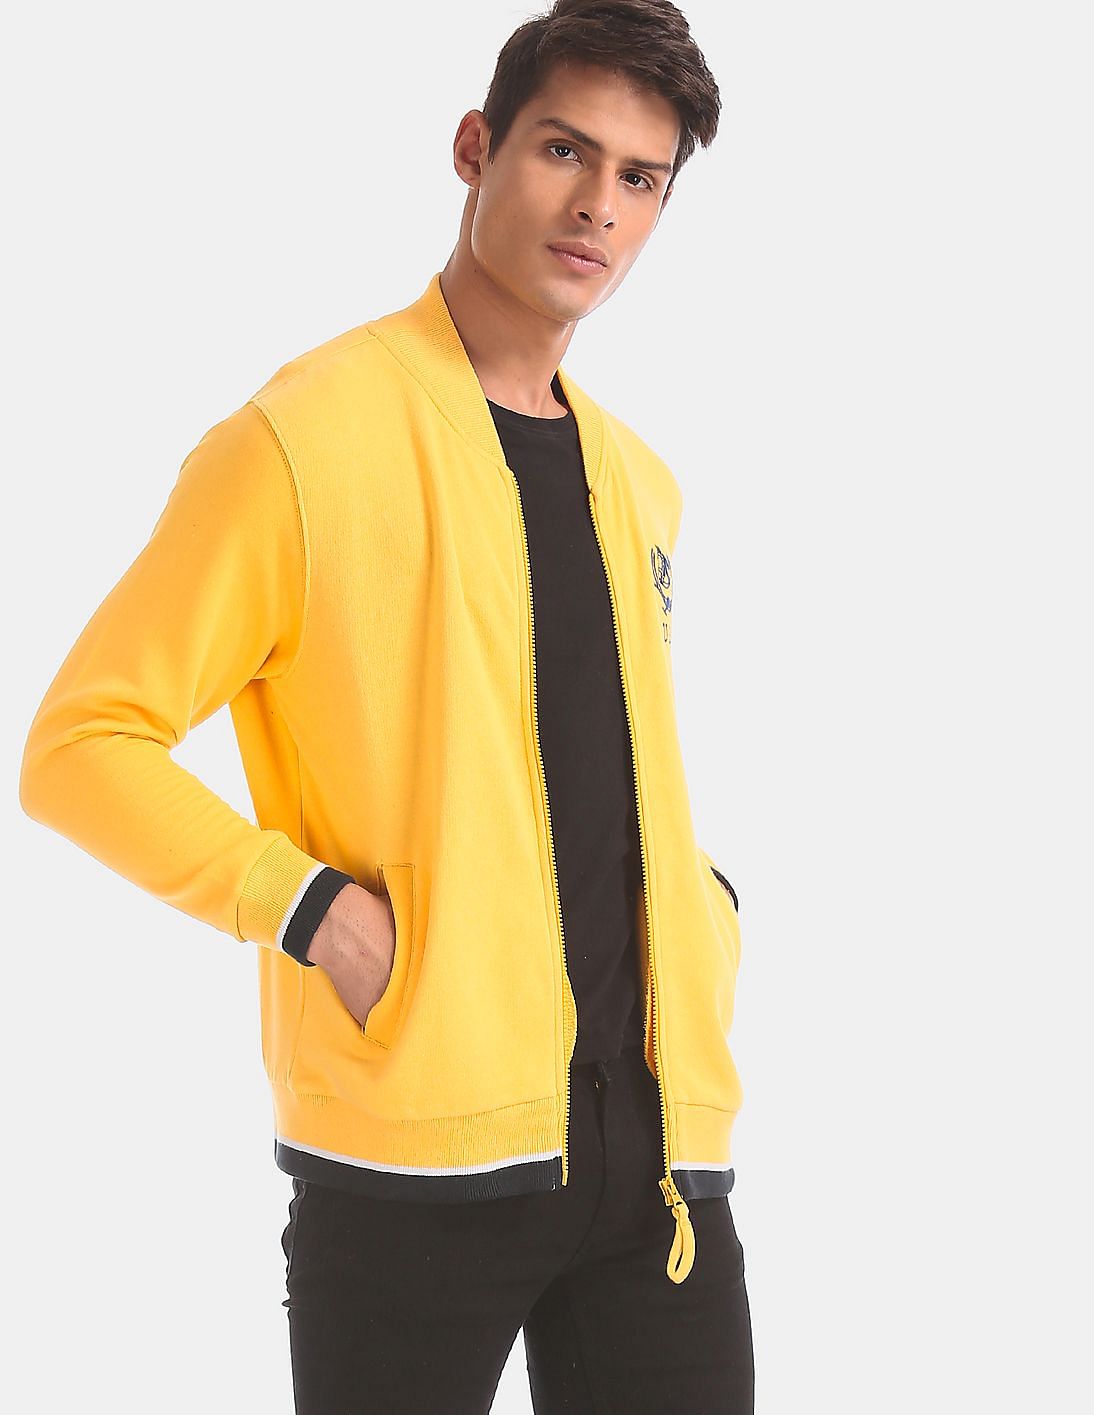 Buy Men Yellow High Neck Zip Up Sweatshirt online at NNNOW.com